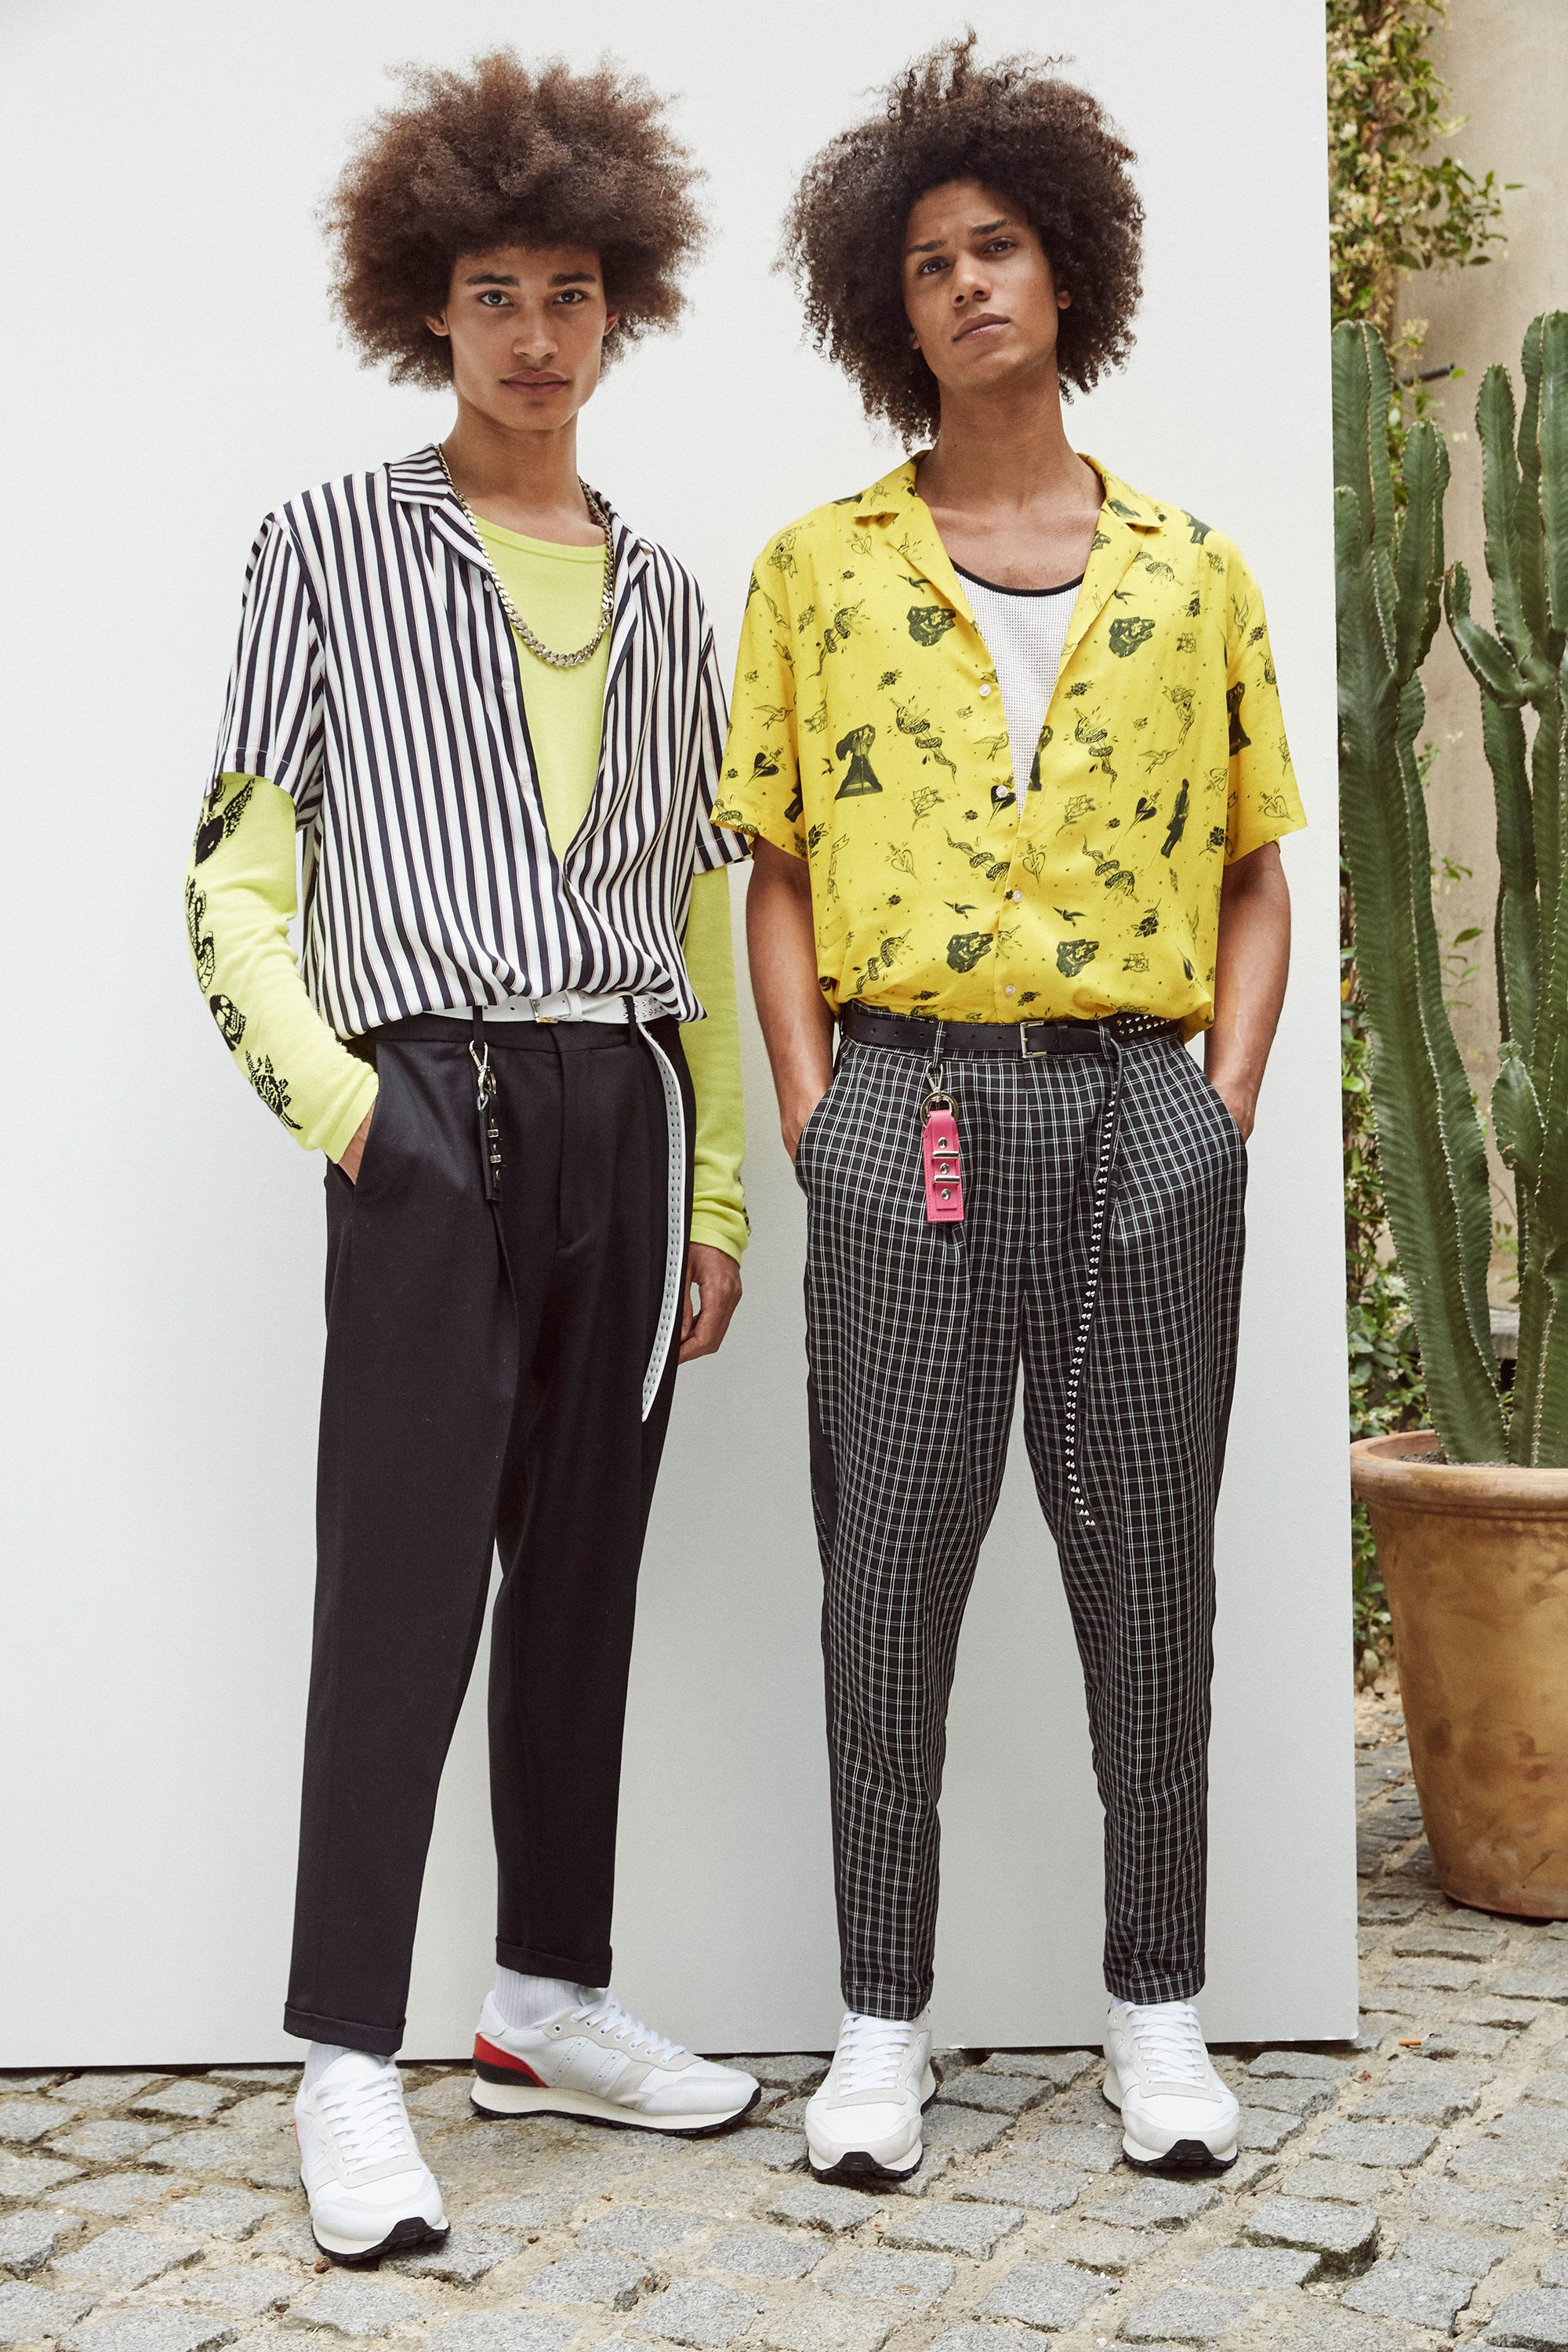 The Kooples Spring 2018 Menswear